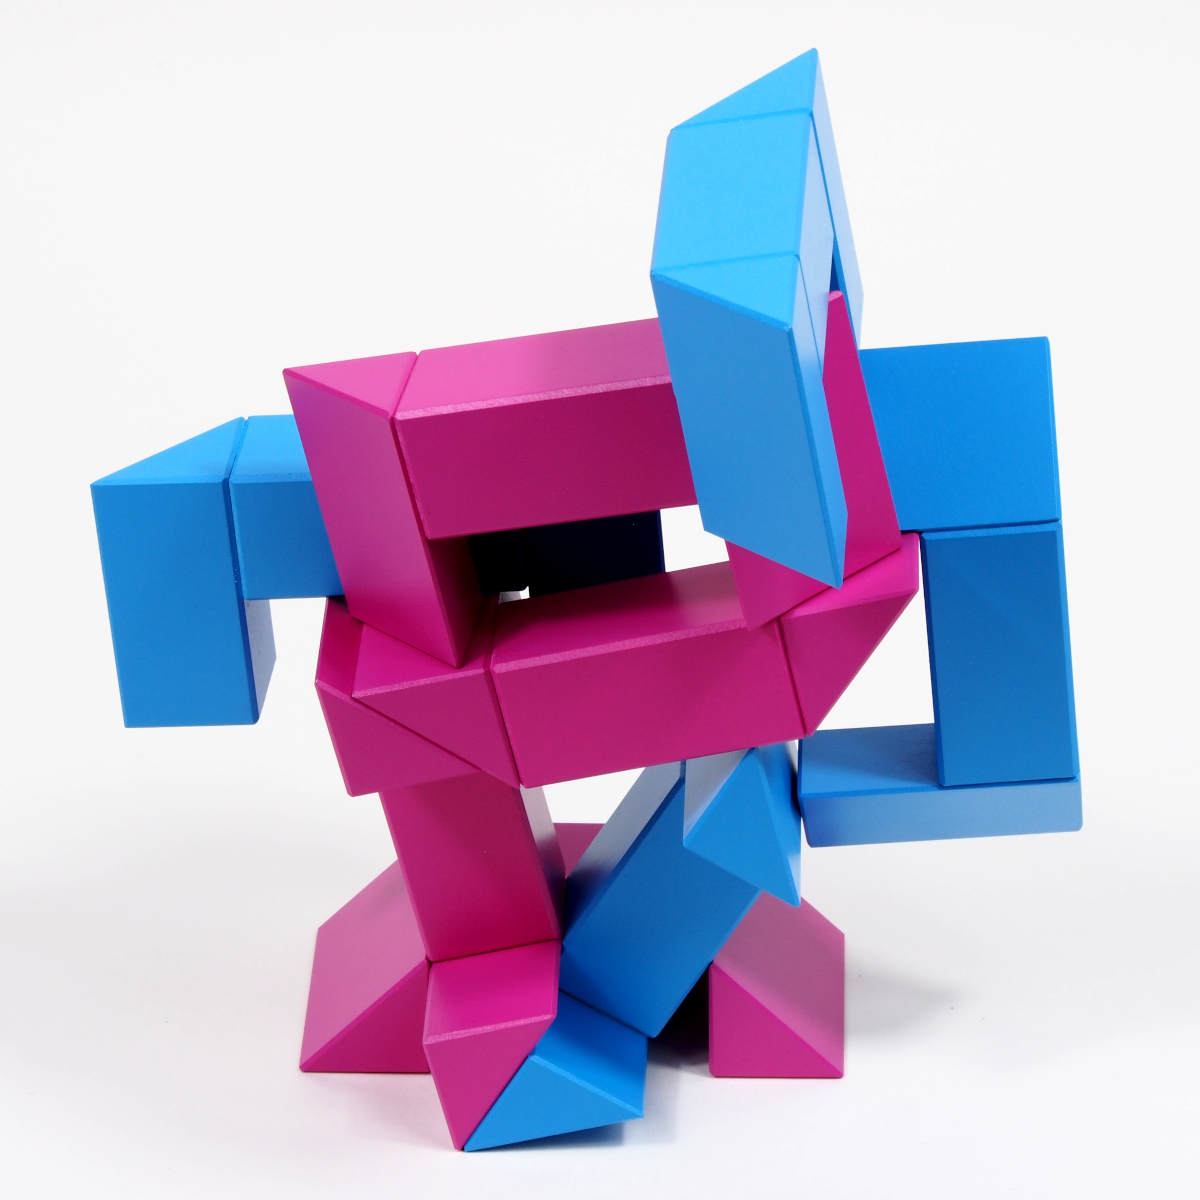 Construction toy Ponte (magenta / blue) by Naef Spiele, Switzerland